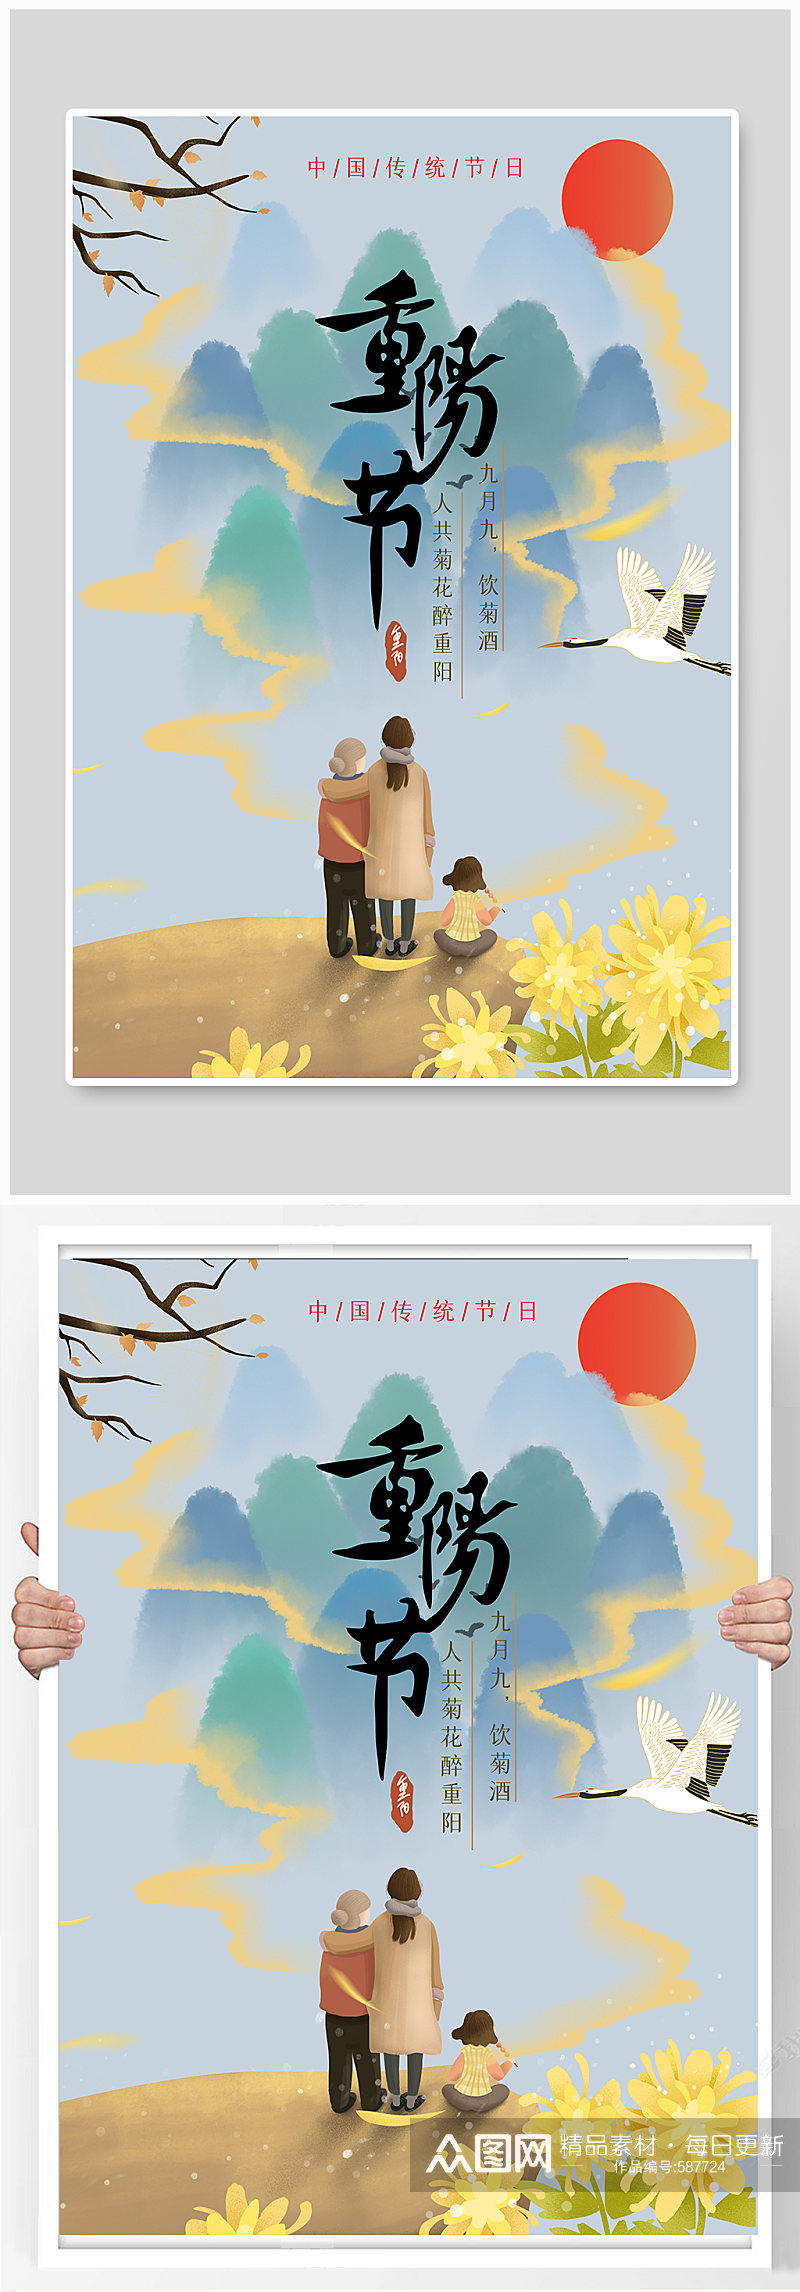 重阳节节日宣传海报素材